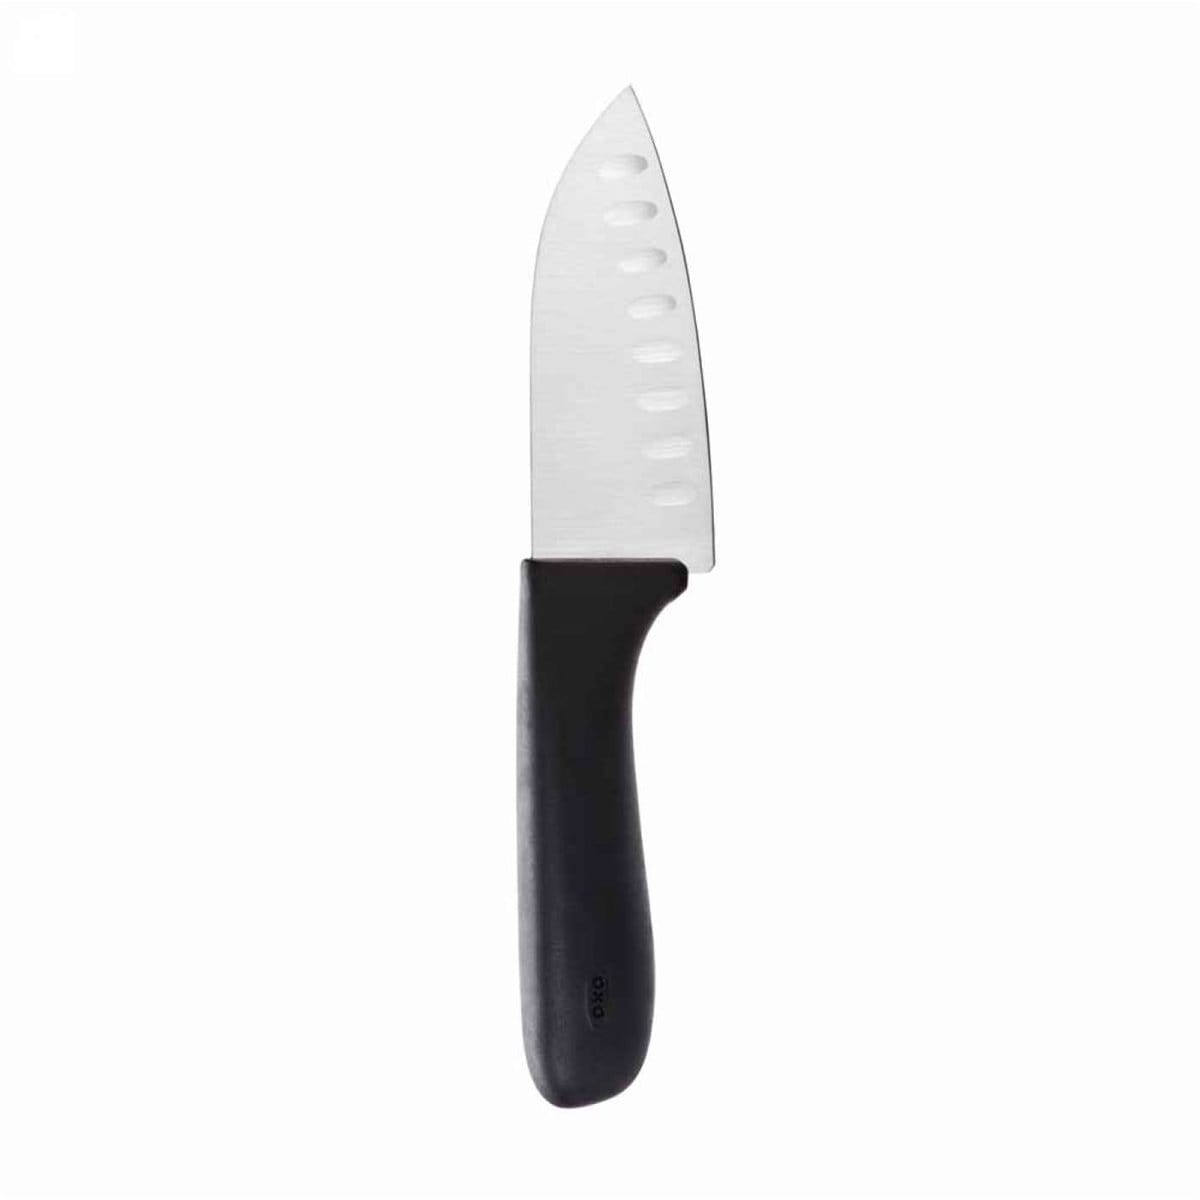 OXO Good Grips 4-Inch Santoku Knife